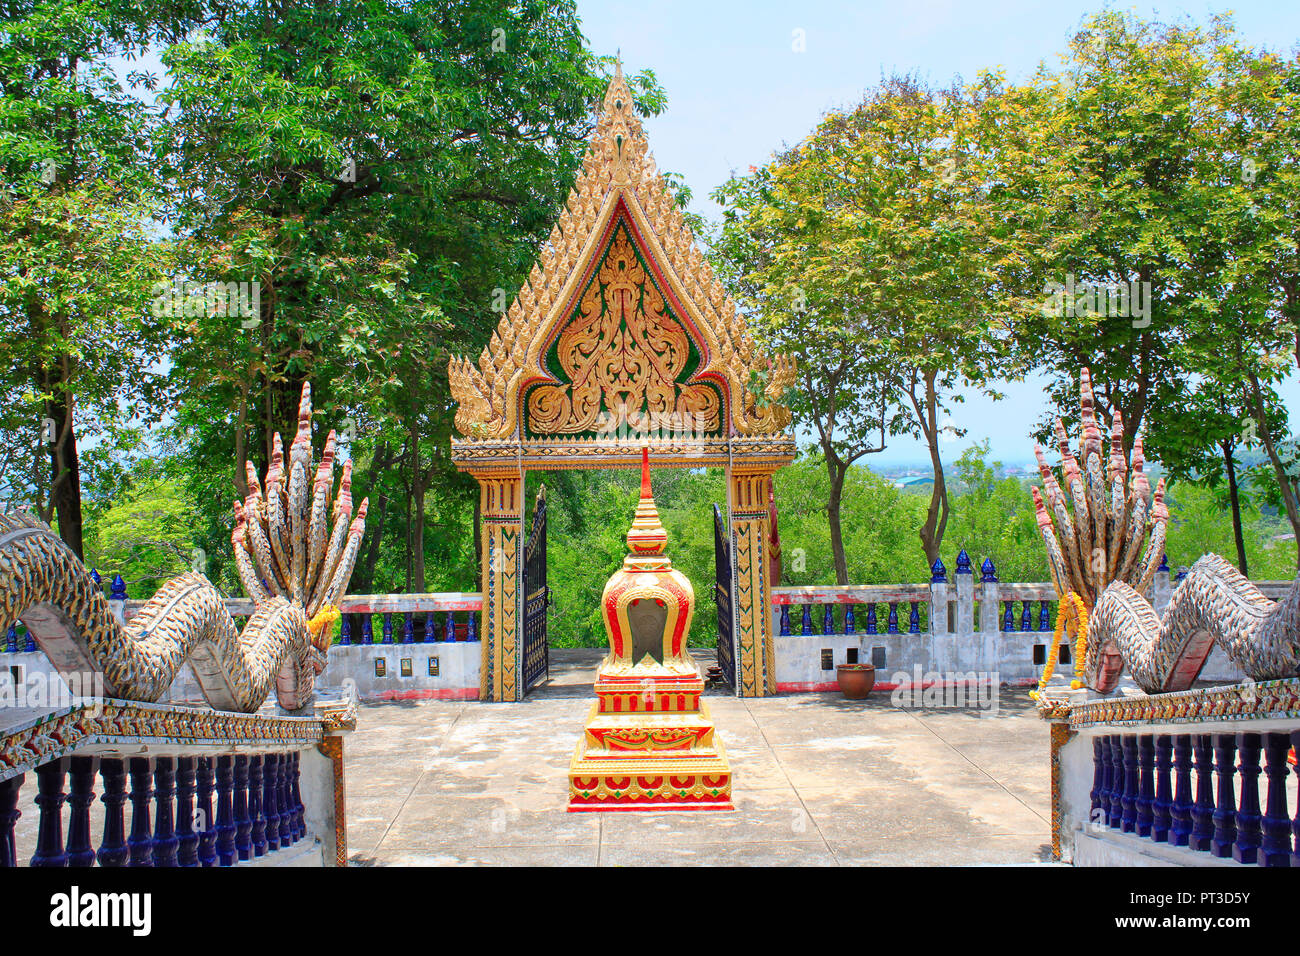 Avis de dragon balustrade et le toit d'un temple bouddhiste à Ban Bung Sam Phan, Nok, Thaïlande Phetchabun. Banque D'Images